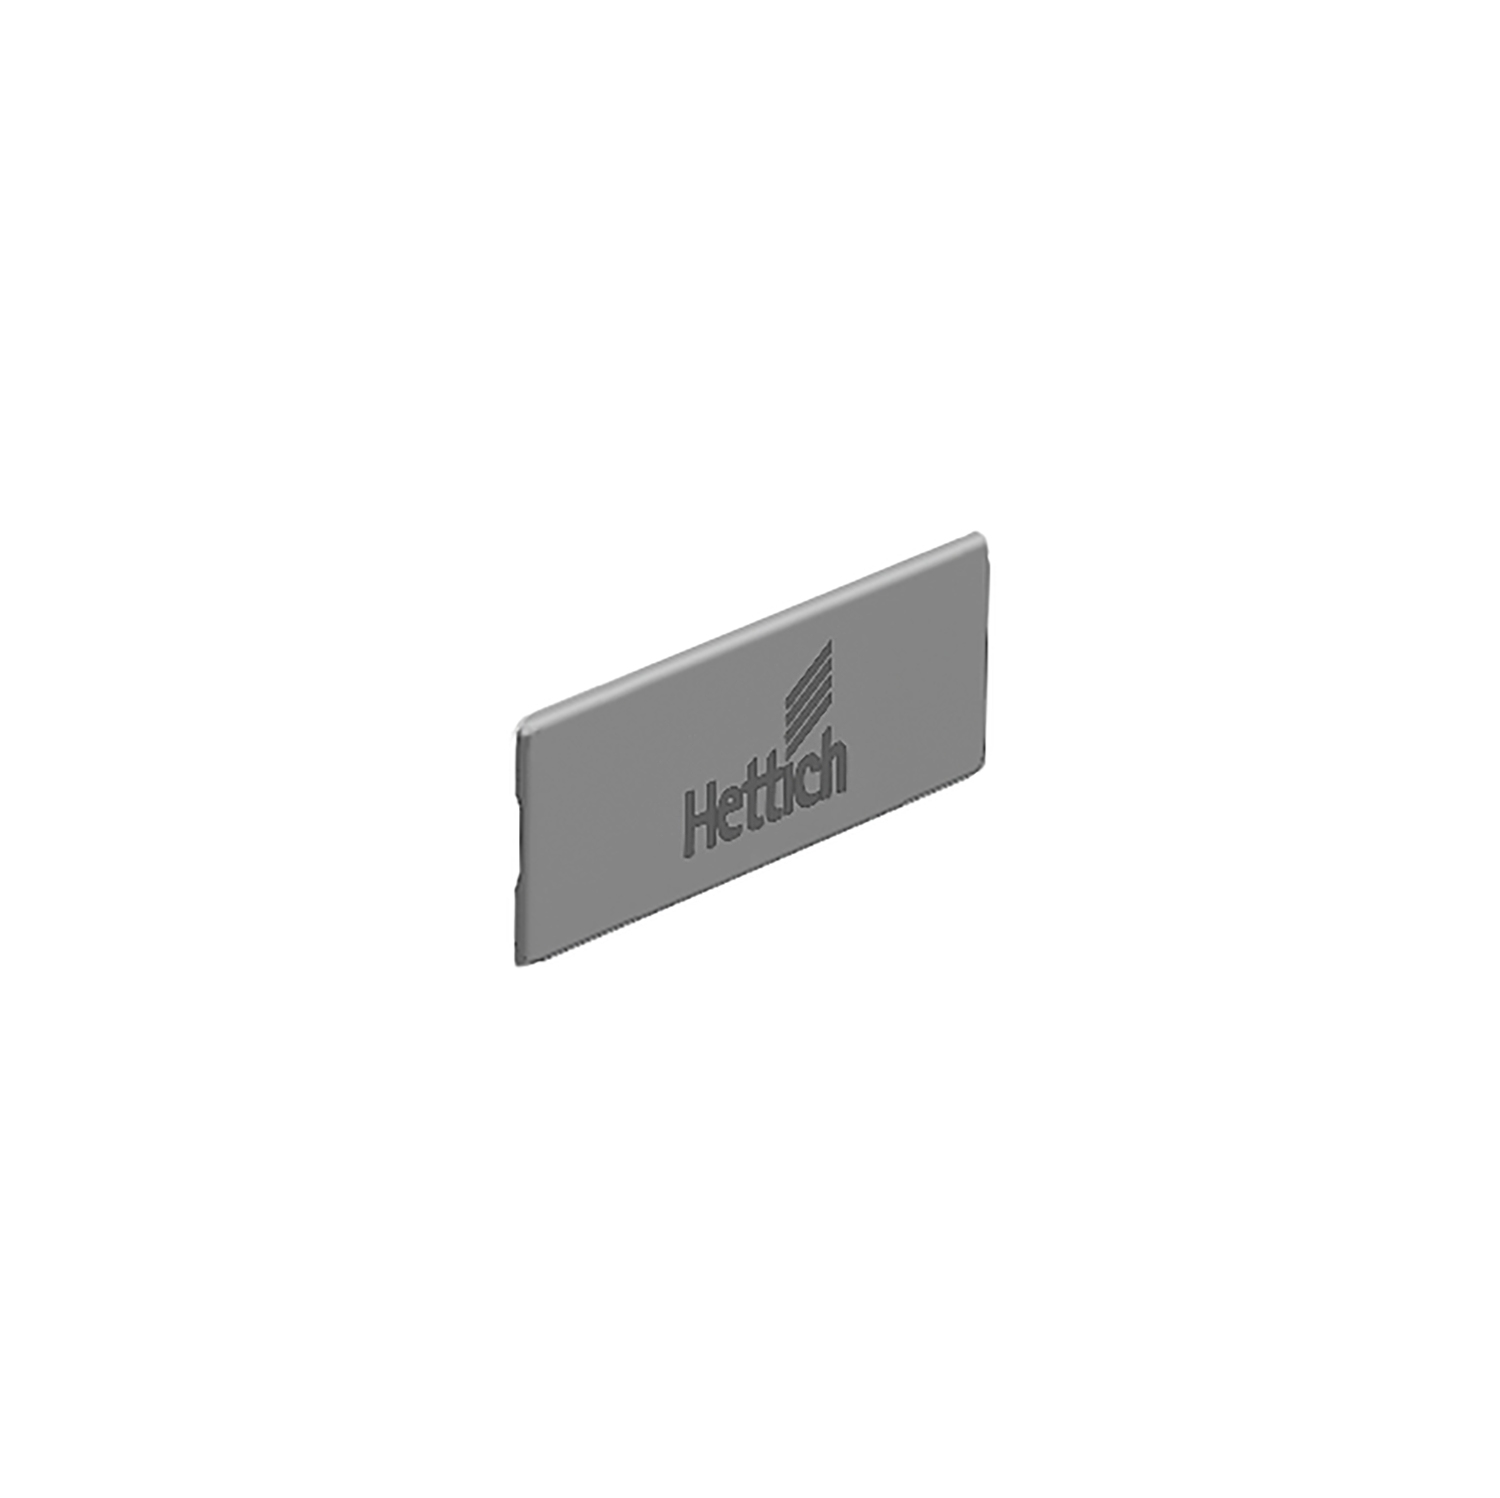 HETTICH InnoTech Atira Abdeckkappe, grau mit Hettich Logo, 9194646